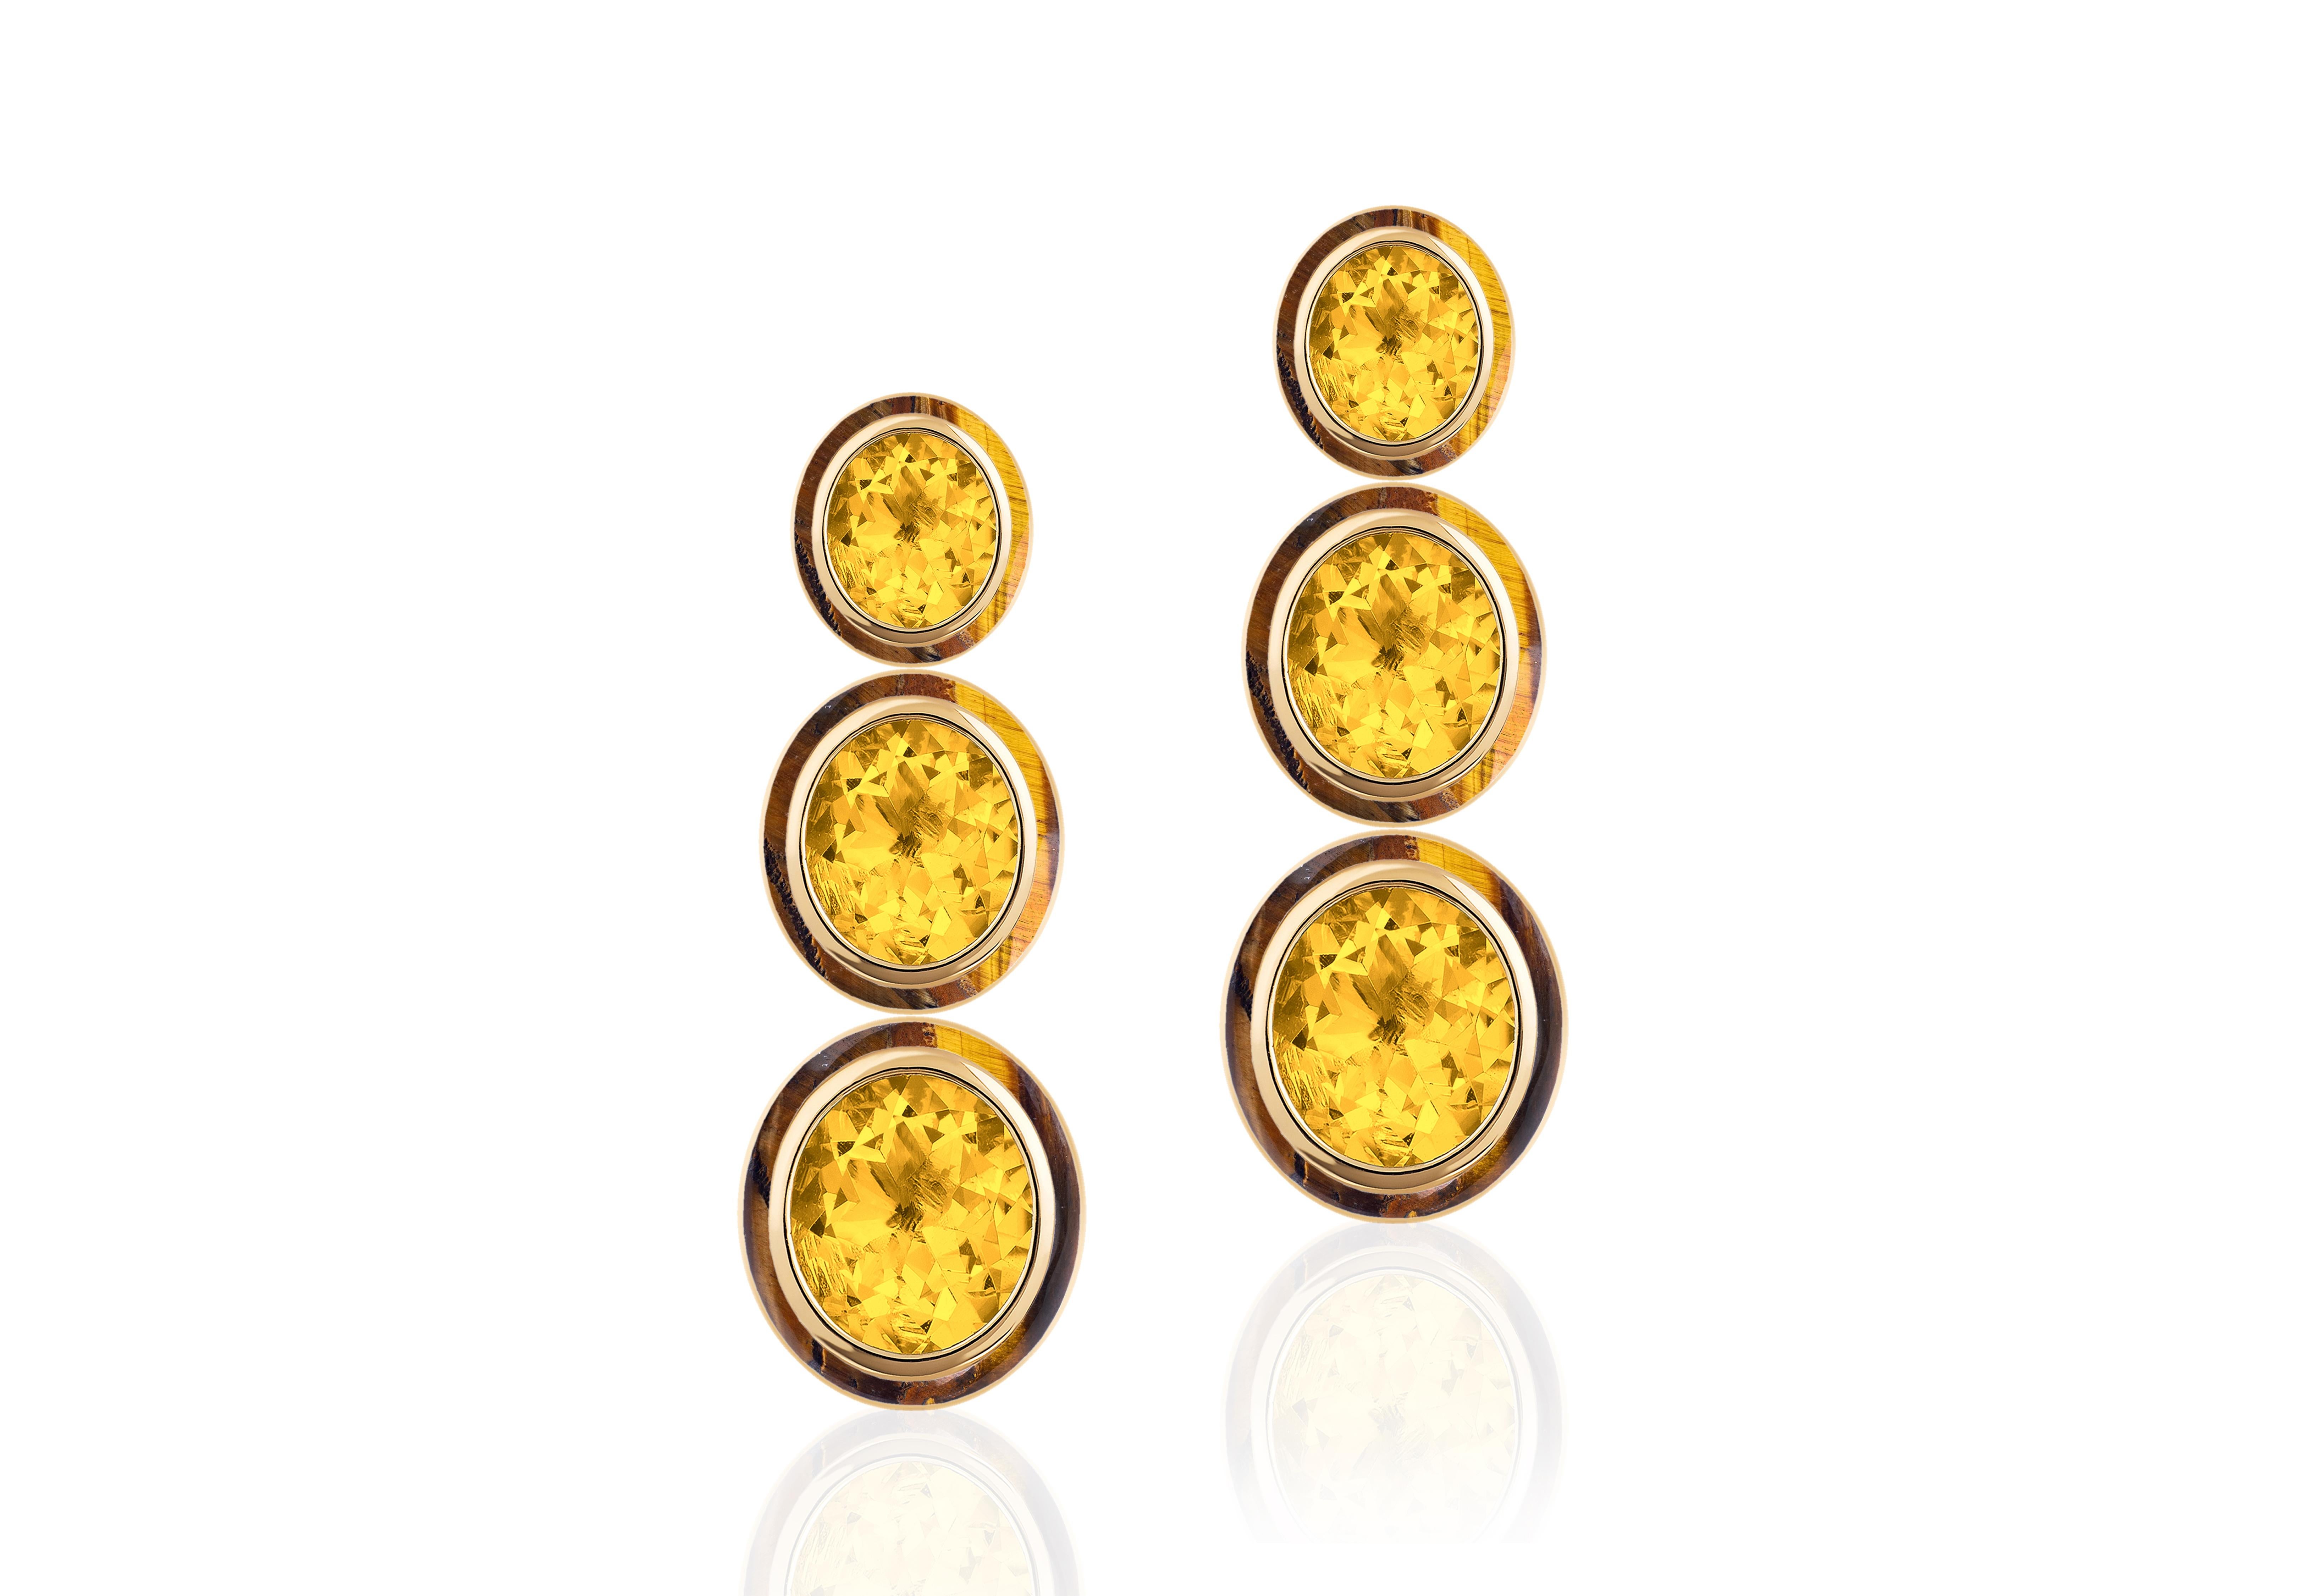 Die Melange-Ohrringe sind ein atemberaubendes Schmuckstück mit einem dreistufigen ovalen Design. Sie sind aus 18-karätigem Gelbgold gefertigt und mit Citrin und Tigerauge besetzt, die eine wunderschöne Mischung aus warmen, goldenen Farbtönen bilden.